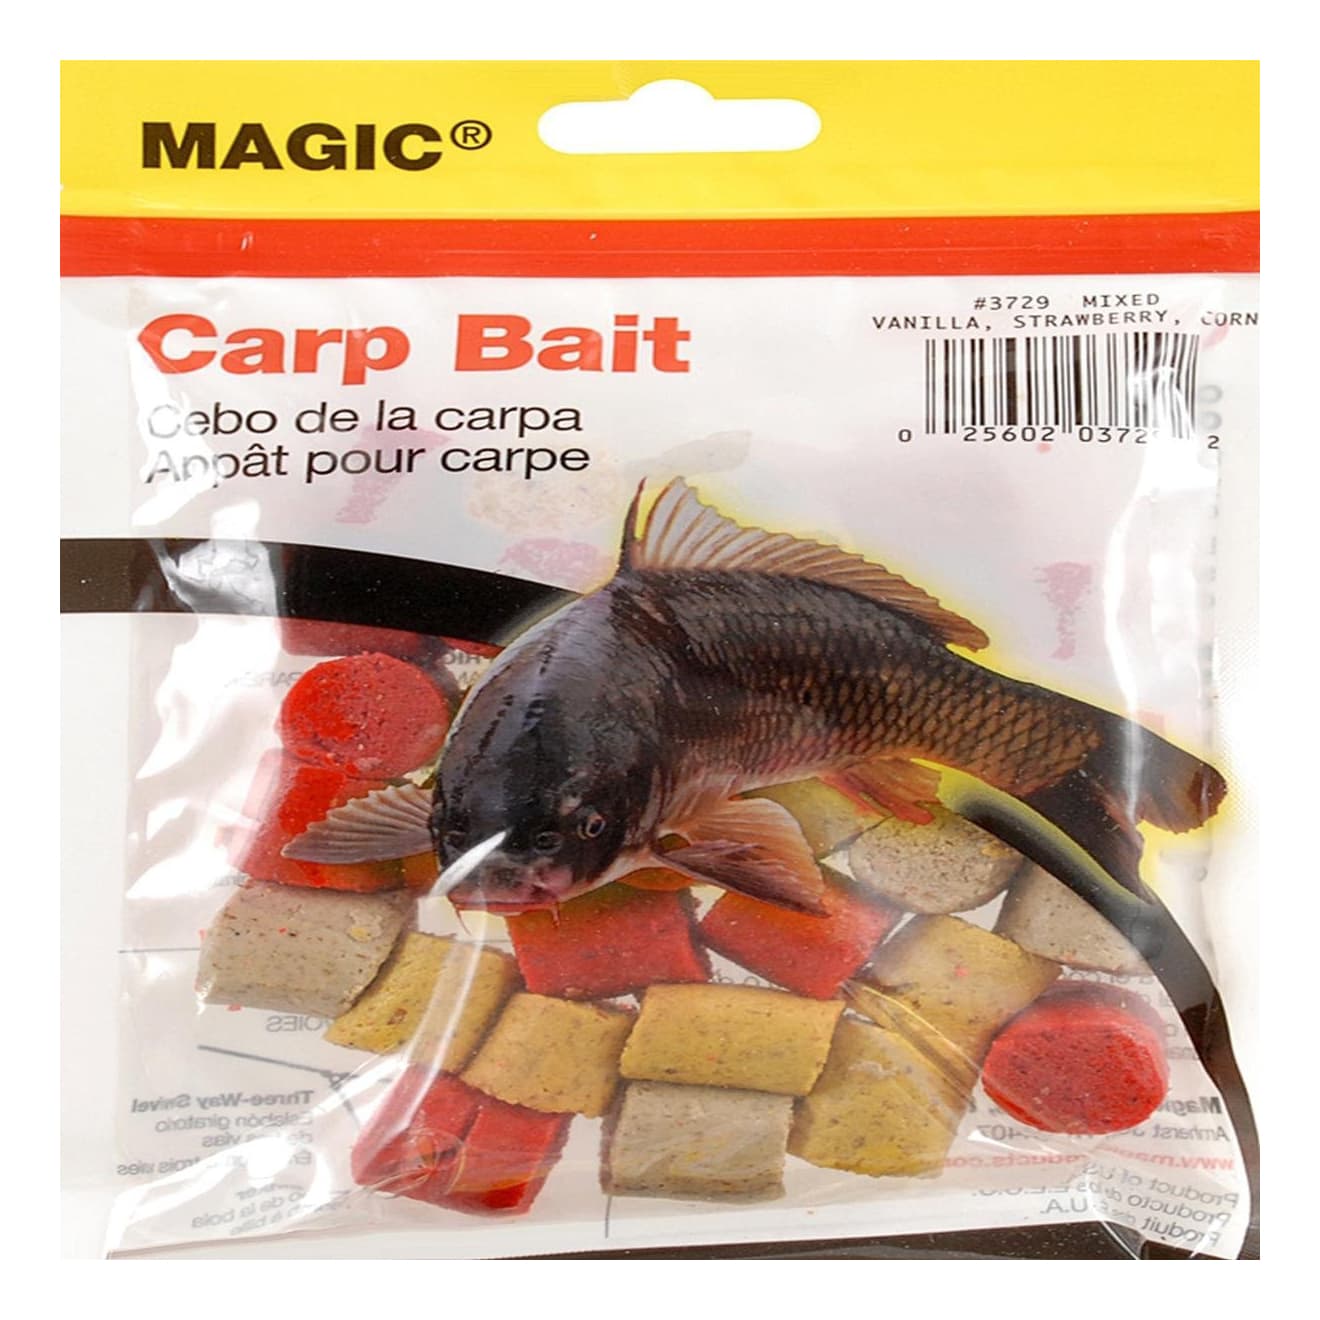 Magic® Carp Bait